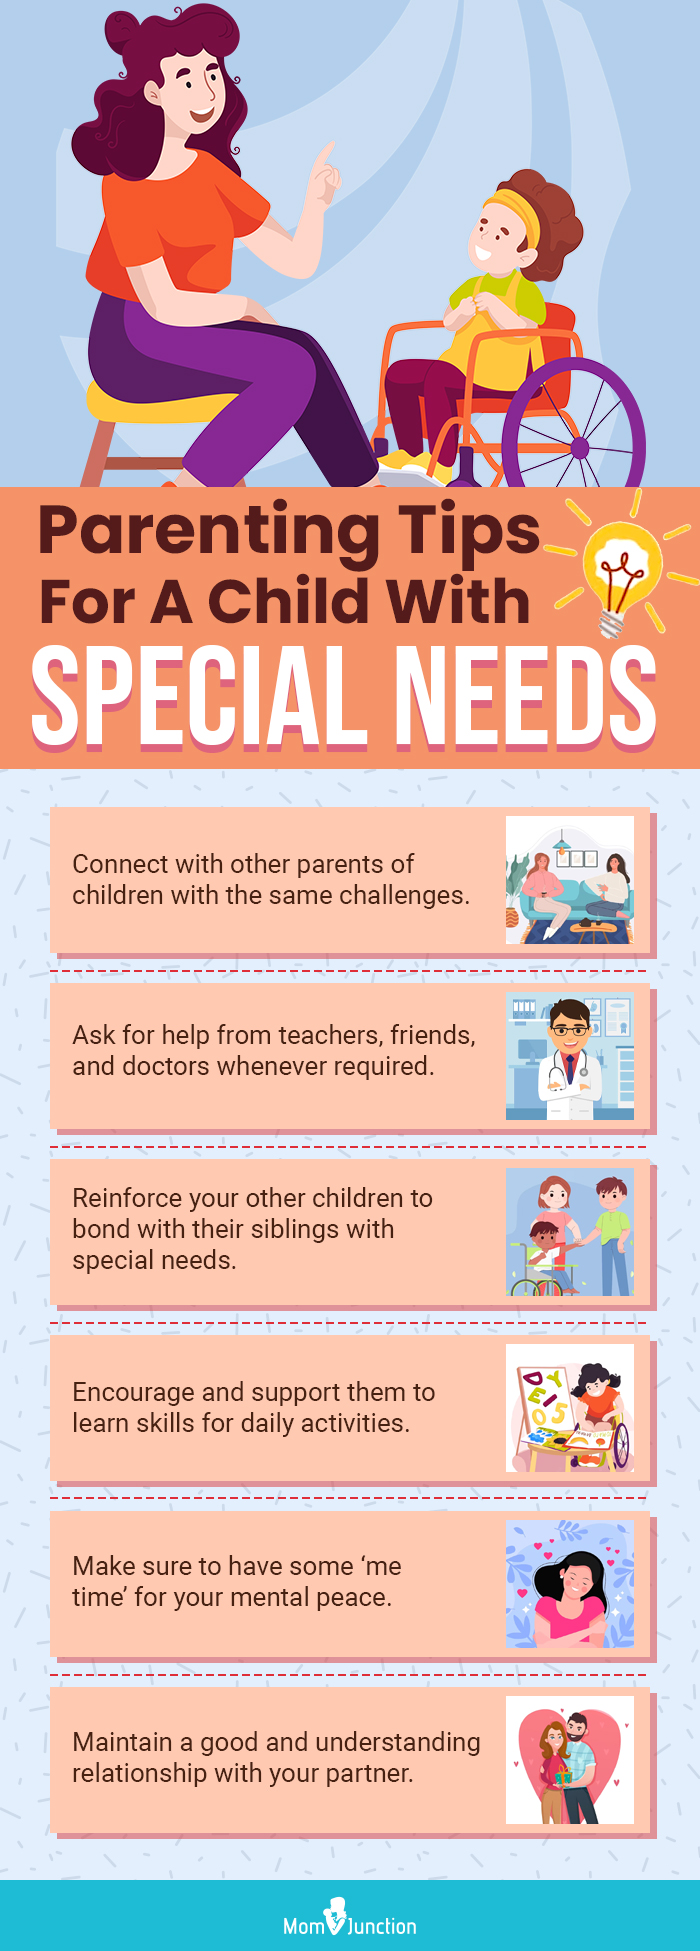 How Do You Define a Special Needs Child?